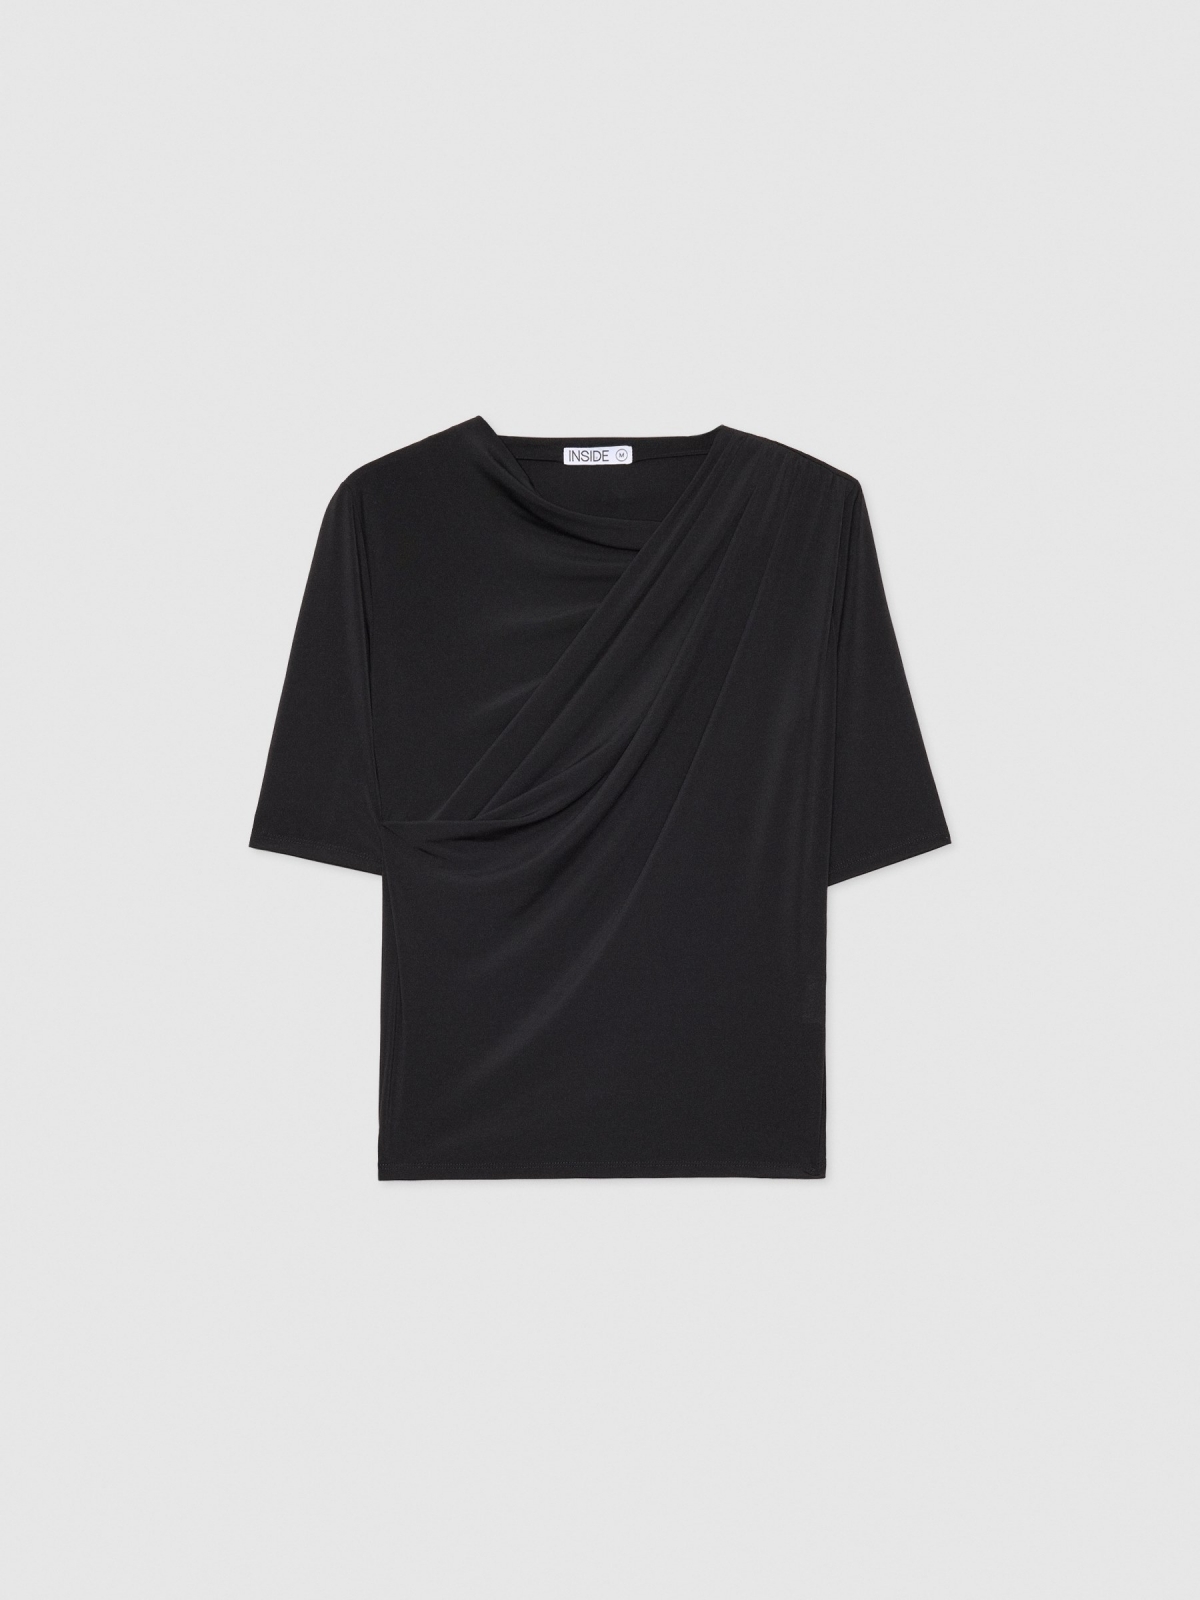  Camiseta drapeada negro